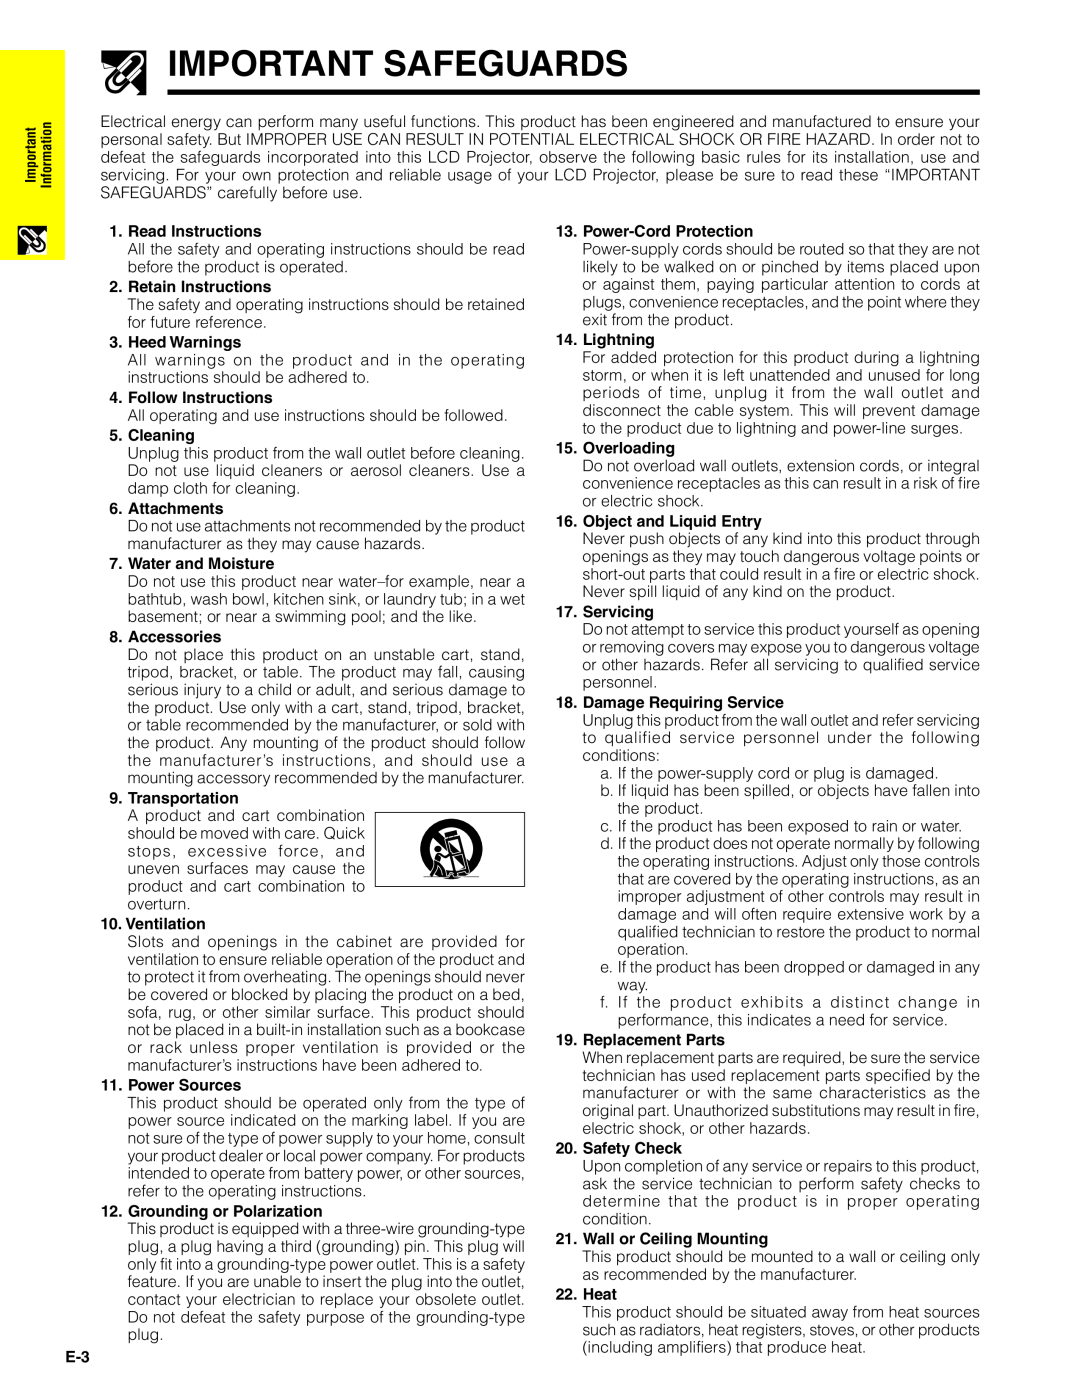 Sharp XG-C40XU operation manual Important Safeguards 